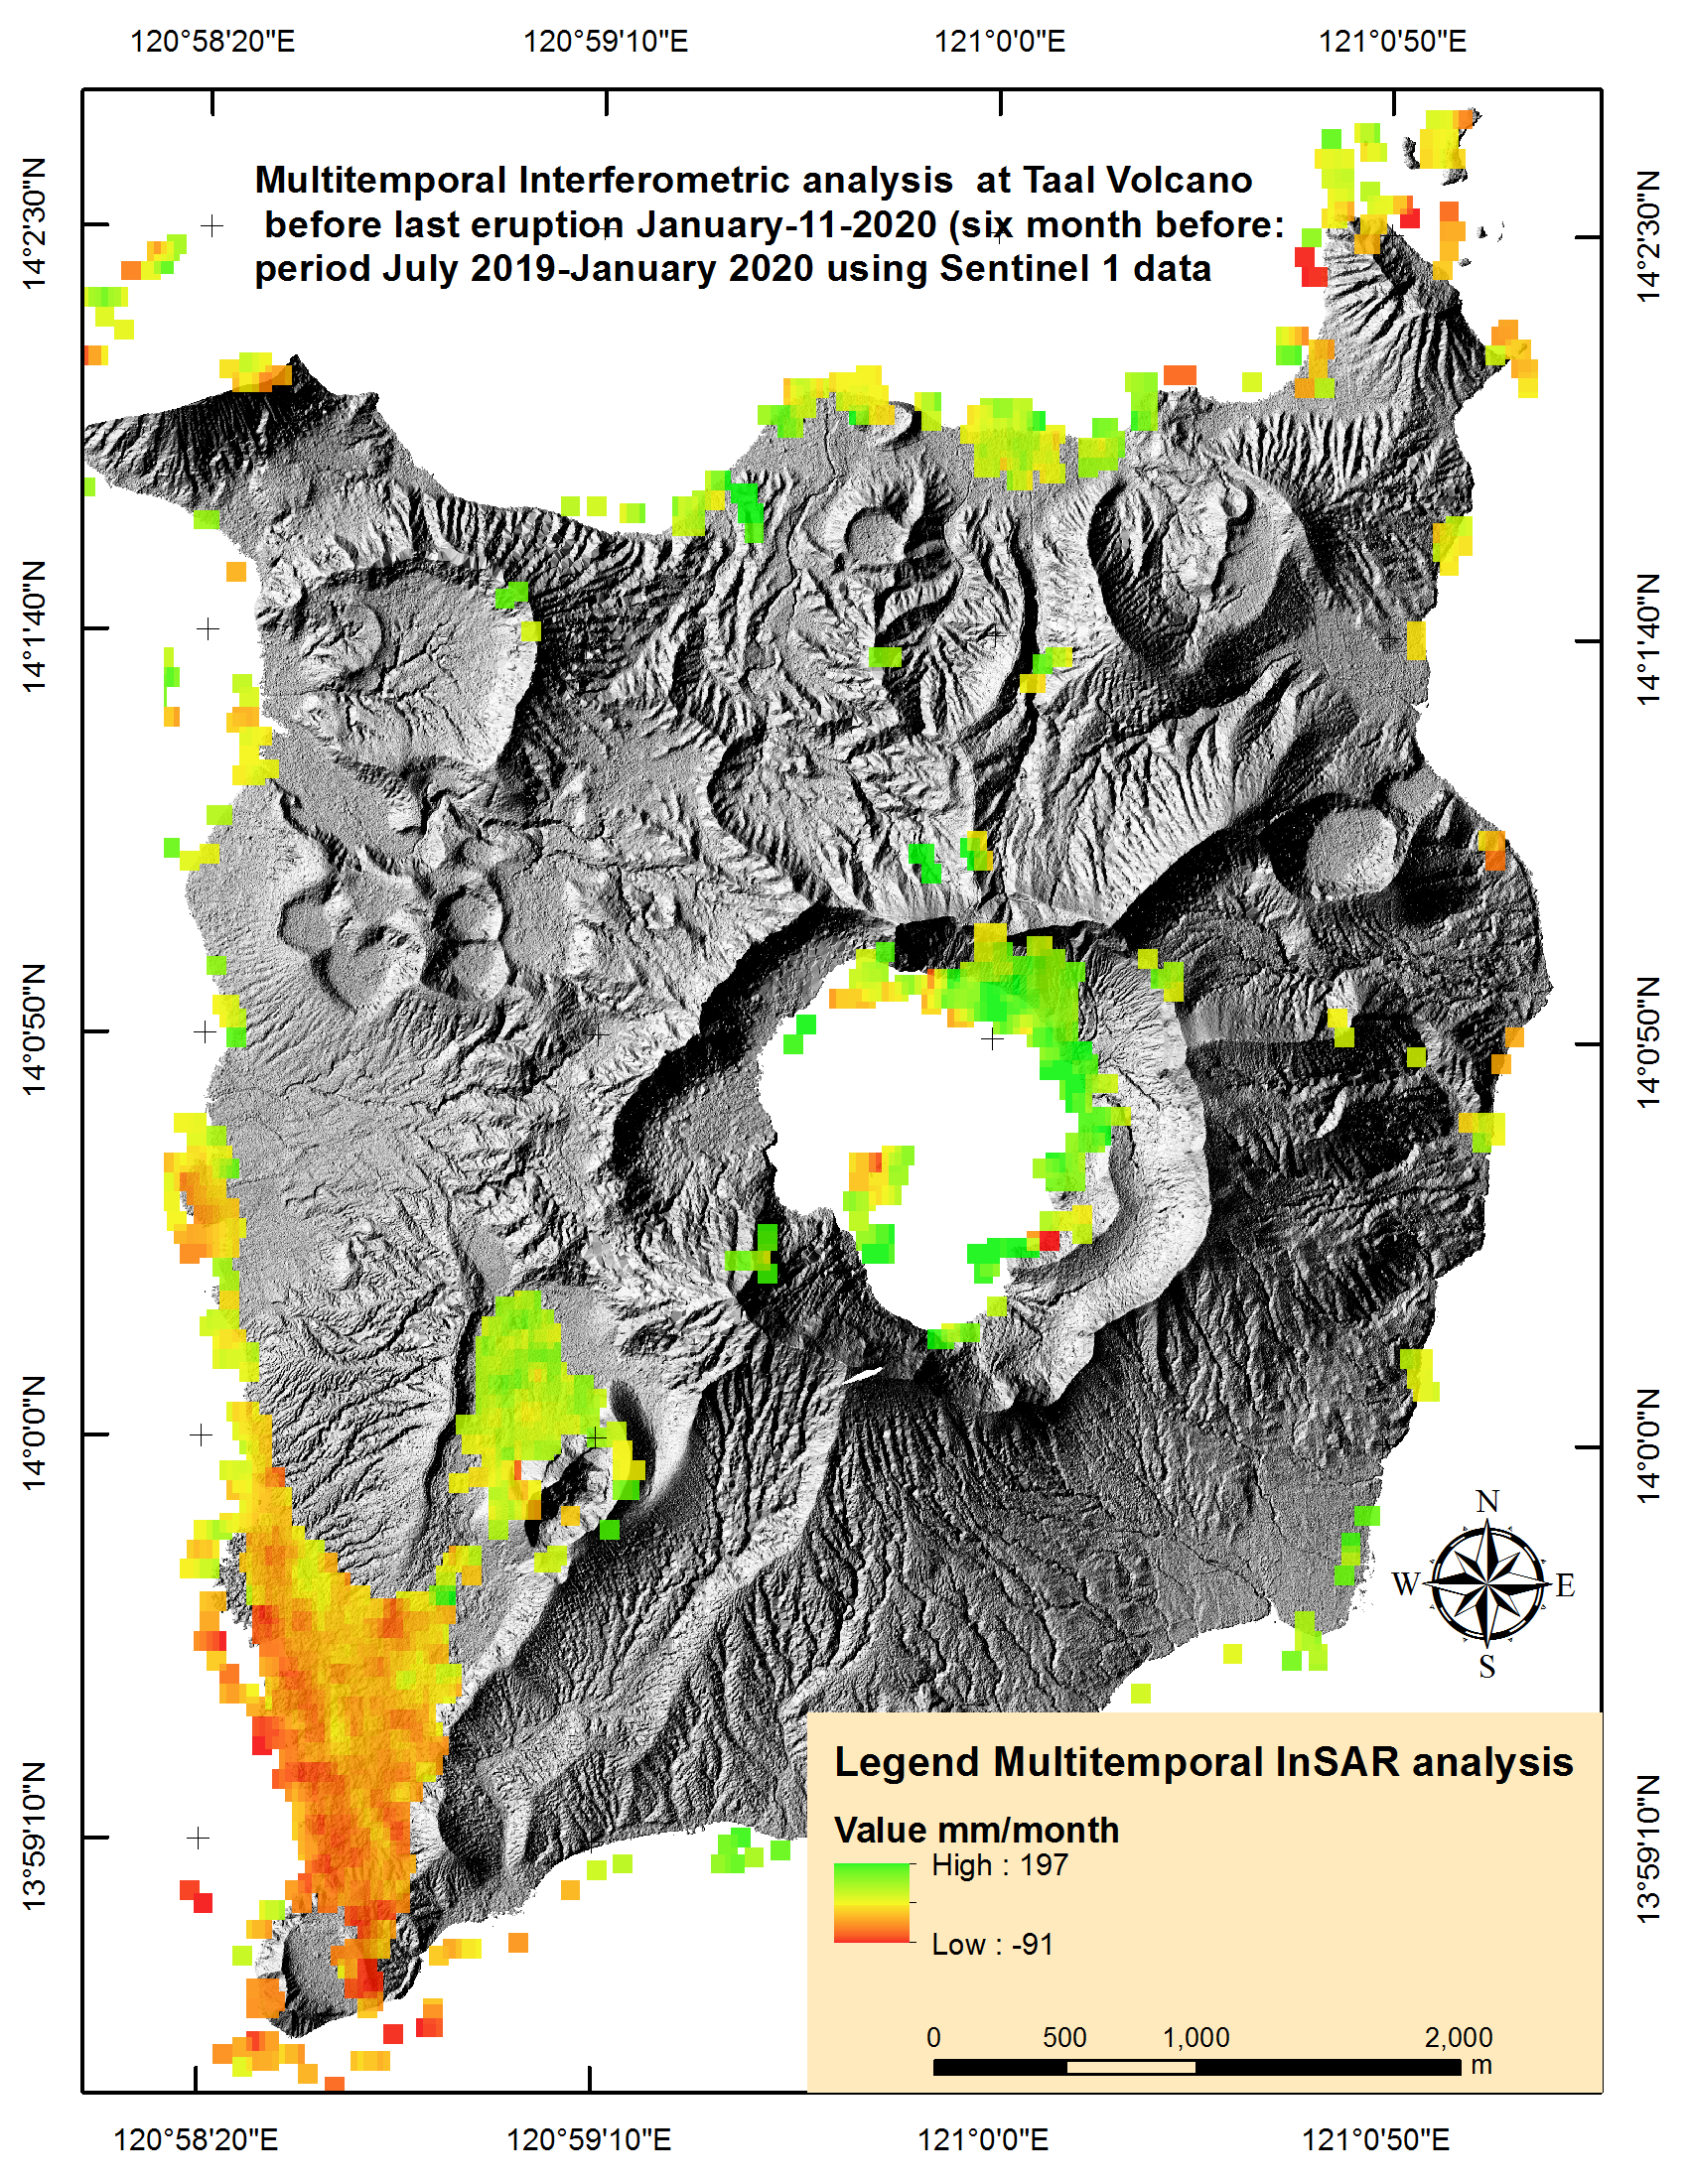 Figura 2a: Resultado del análisis multi temporal InSAR- SBAS en el cráter del volcán Taal.